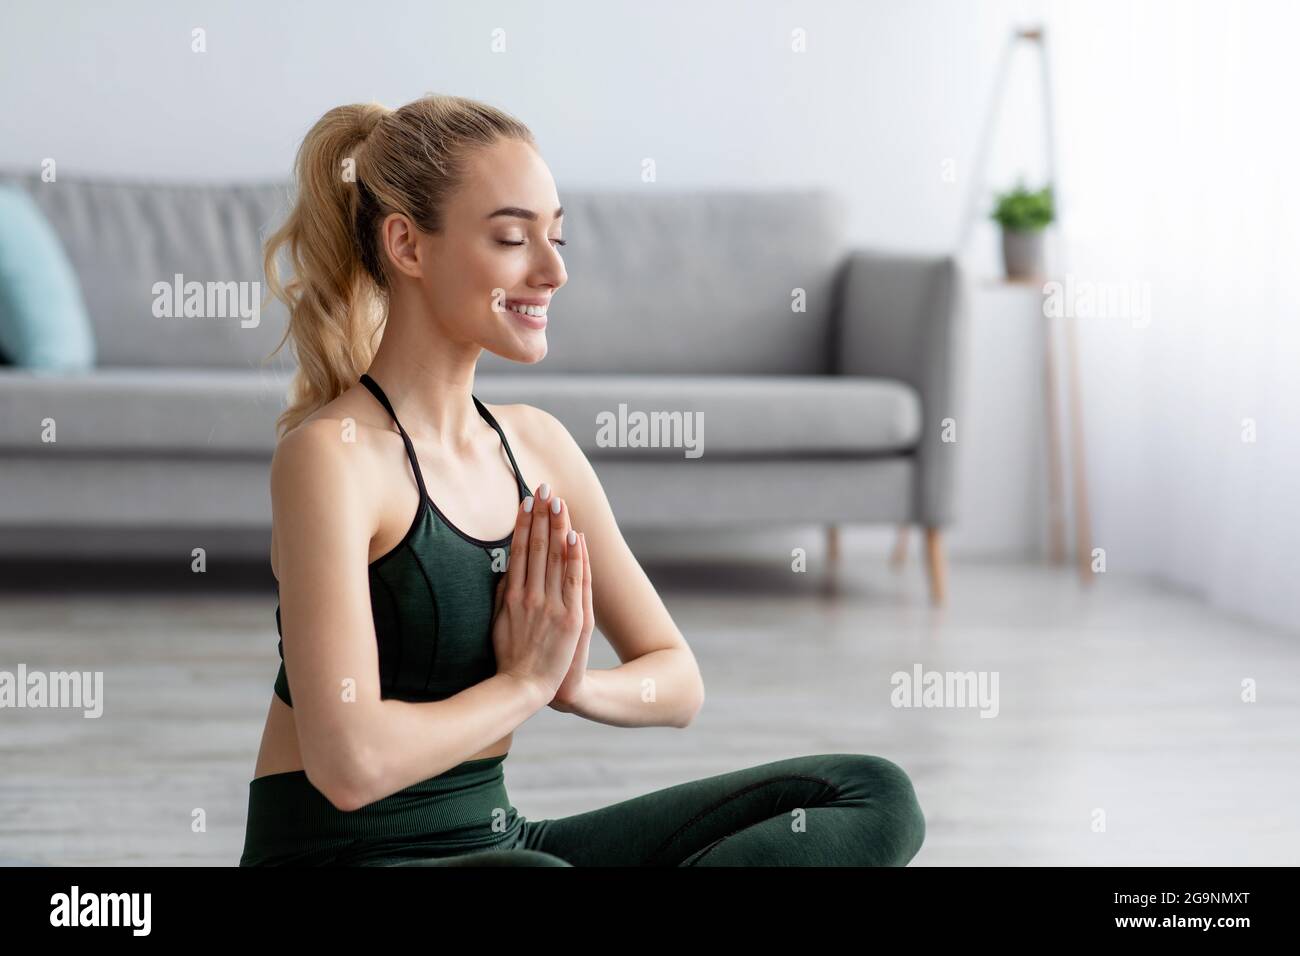 Sport per principianti. Donna che pratica yoga lezione, respirazione, meditazione, esercizi Foto Stock